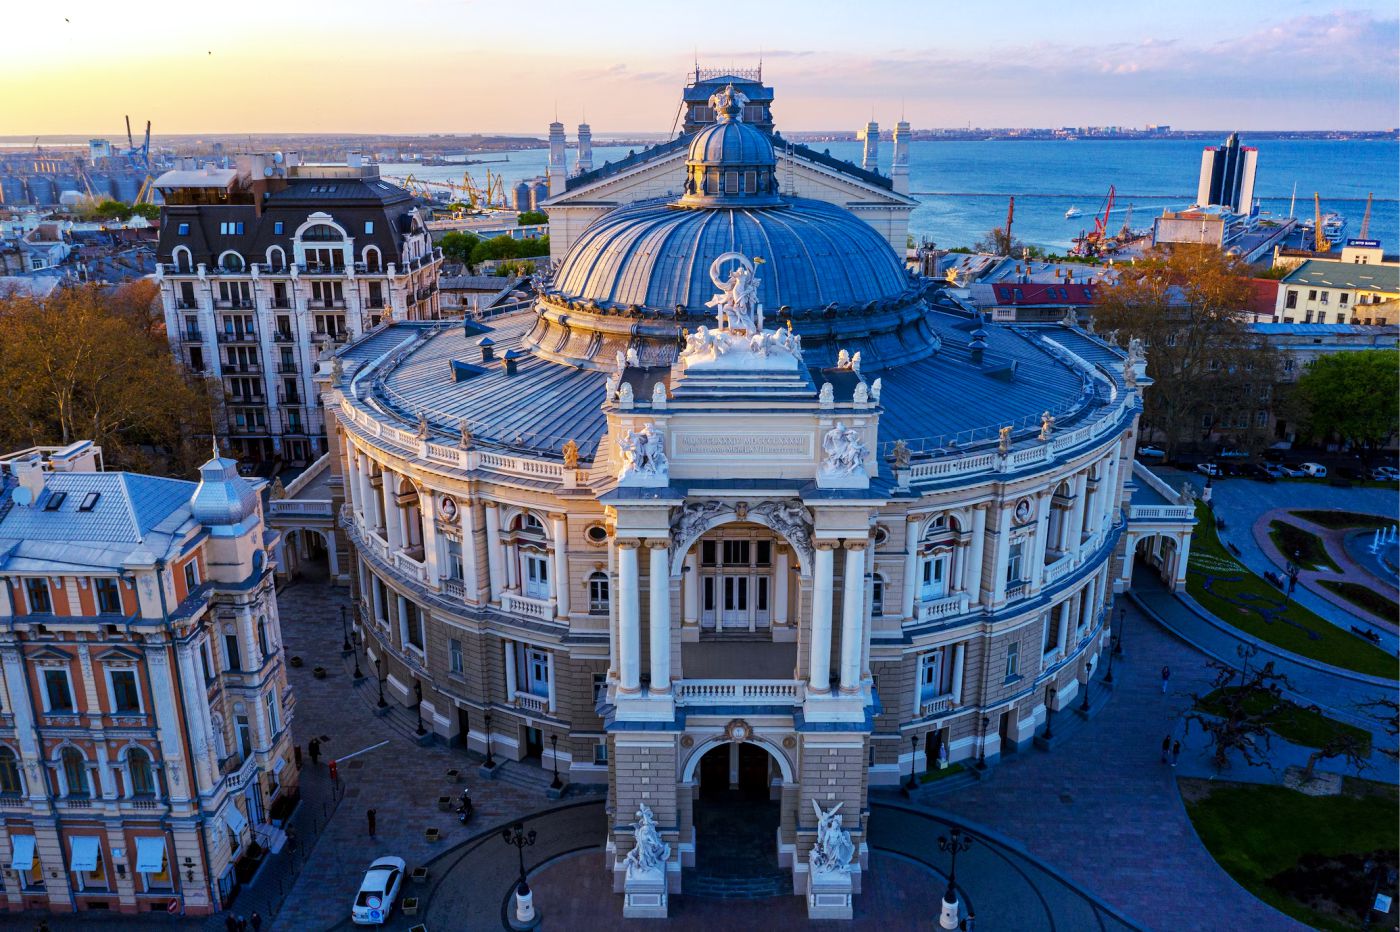 Cảng Odessa huyền thoại - Di sản Thế giới đang gặp nguy hiểm tại Ukraine - Ảnh 10.